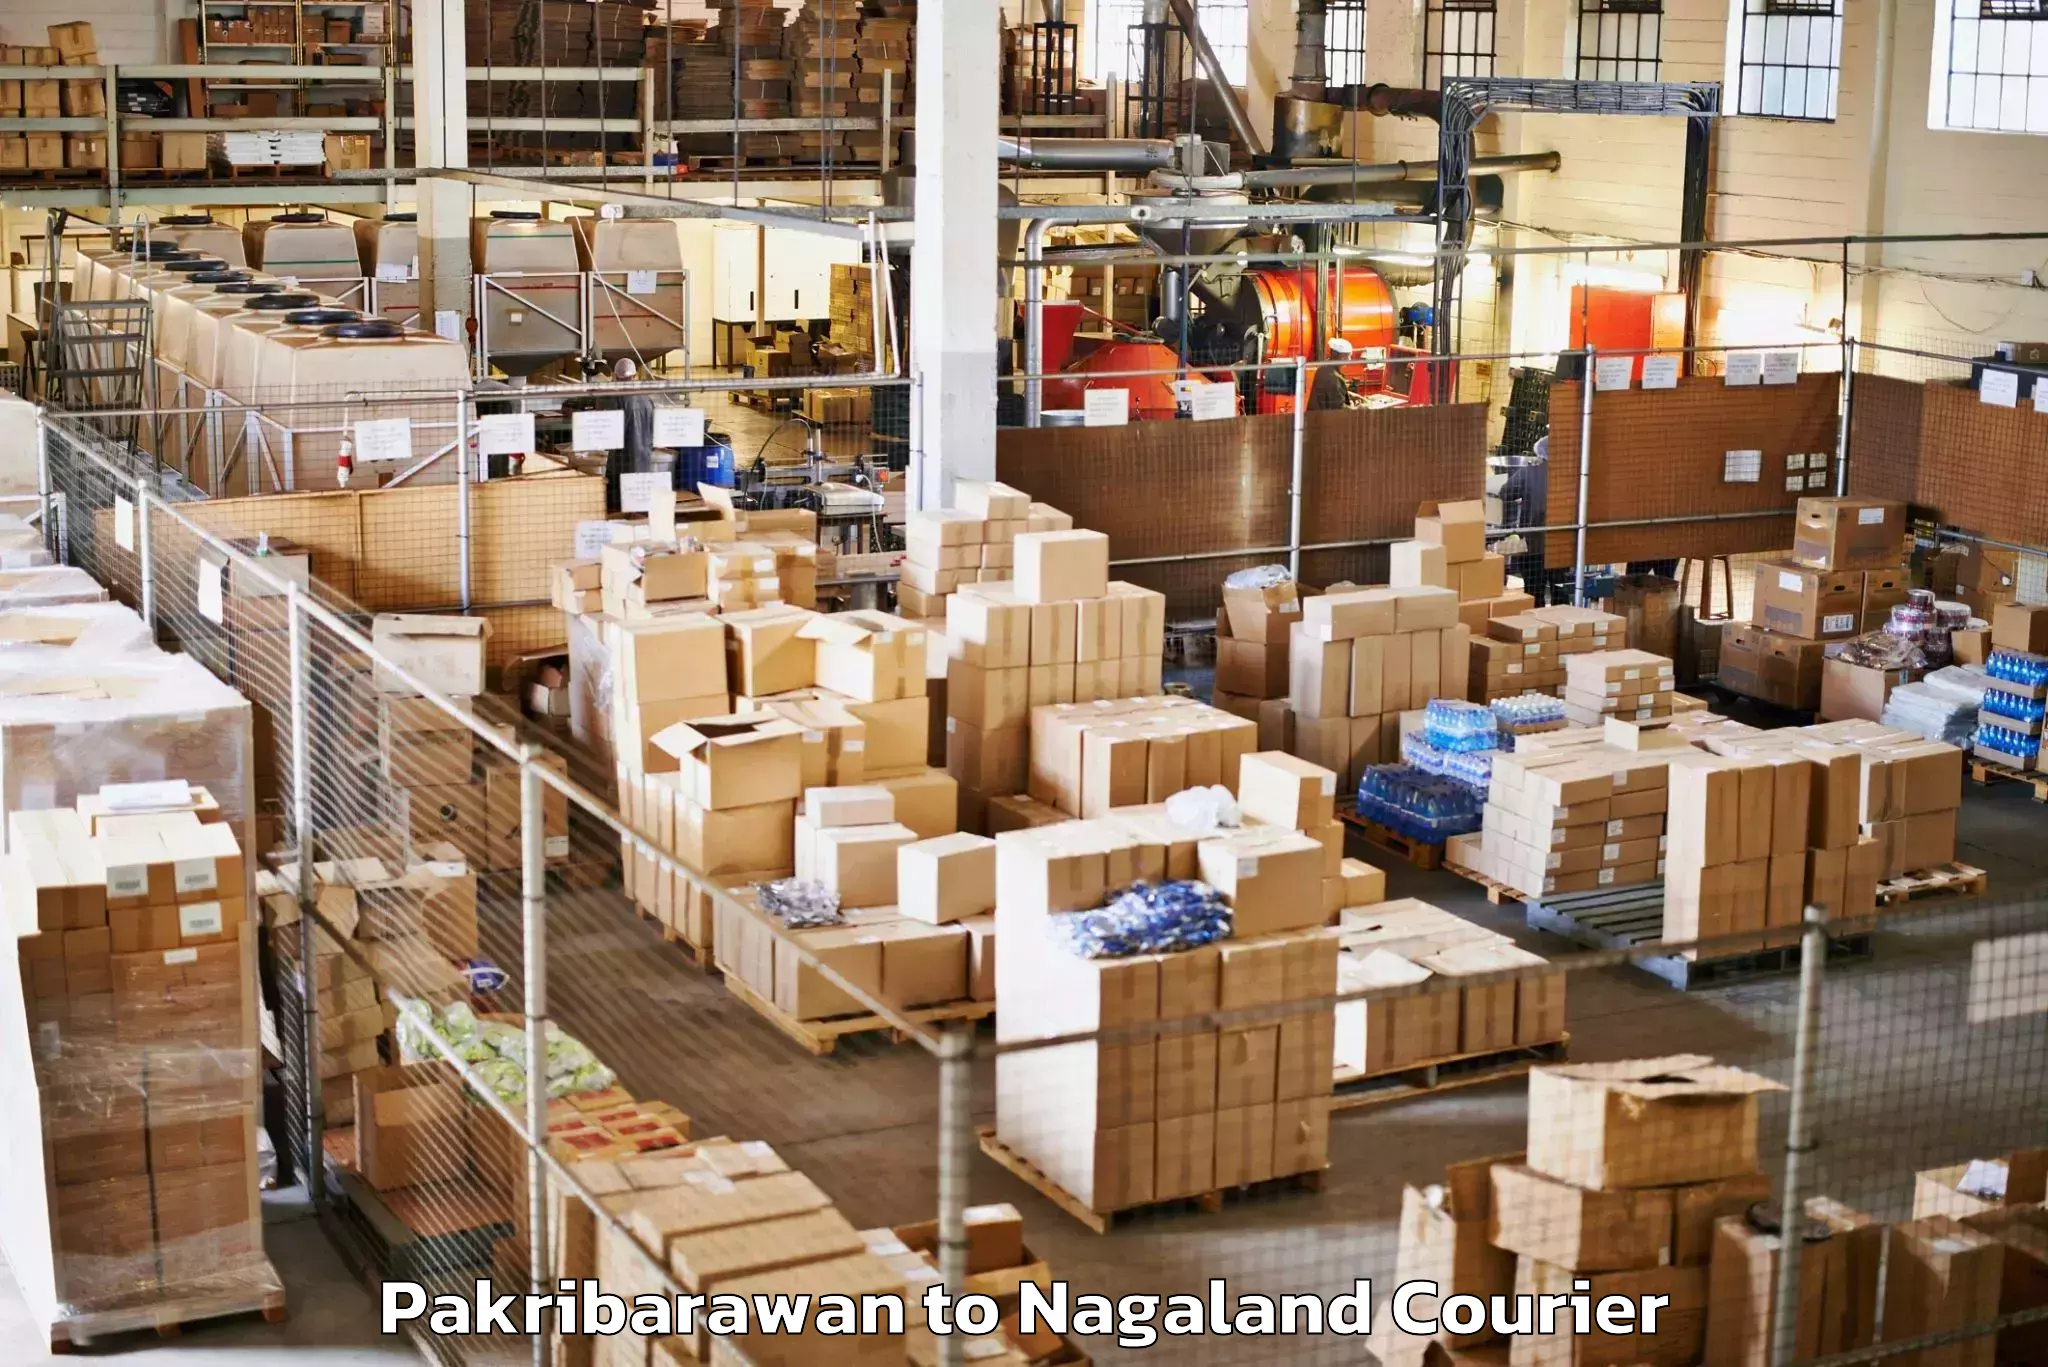 Baggage transport technology Pakribarawan to Nagaland